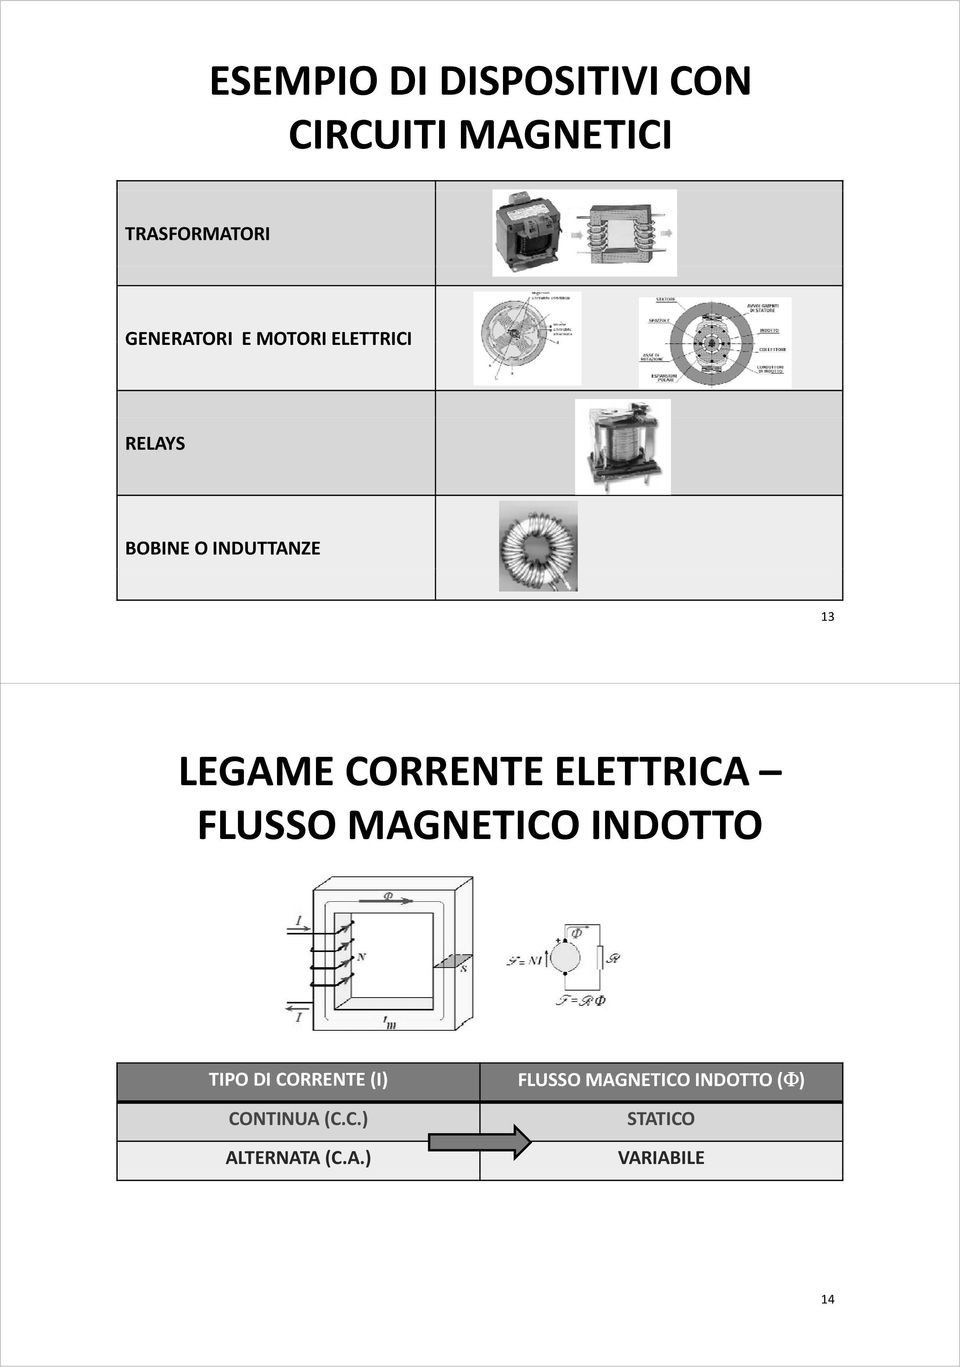 CORRENTE ELETTRICA FLUSSO MAGNETICO INDOTTO TIPO DI CORRENTE (I)